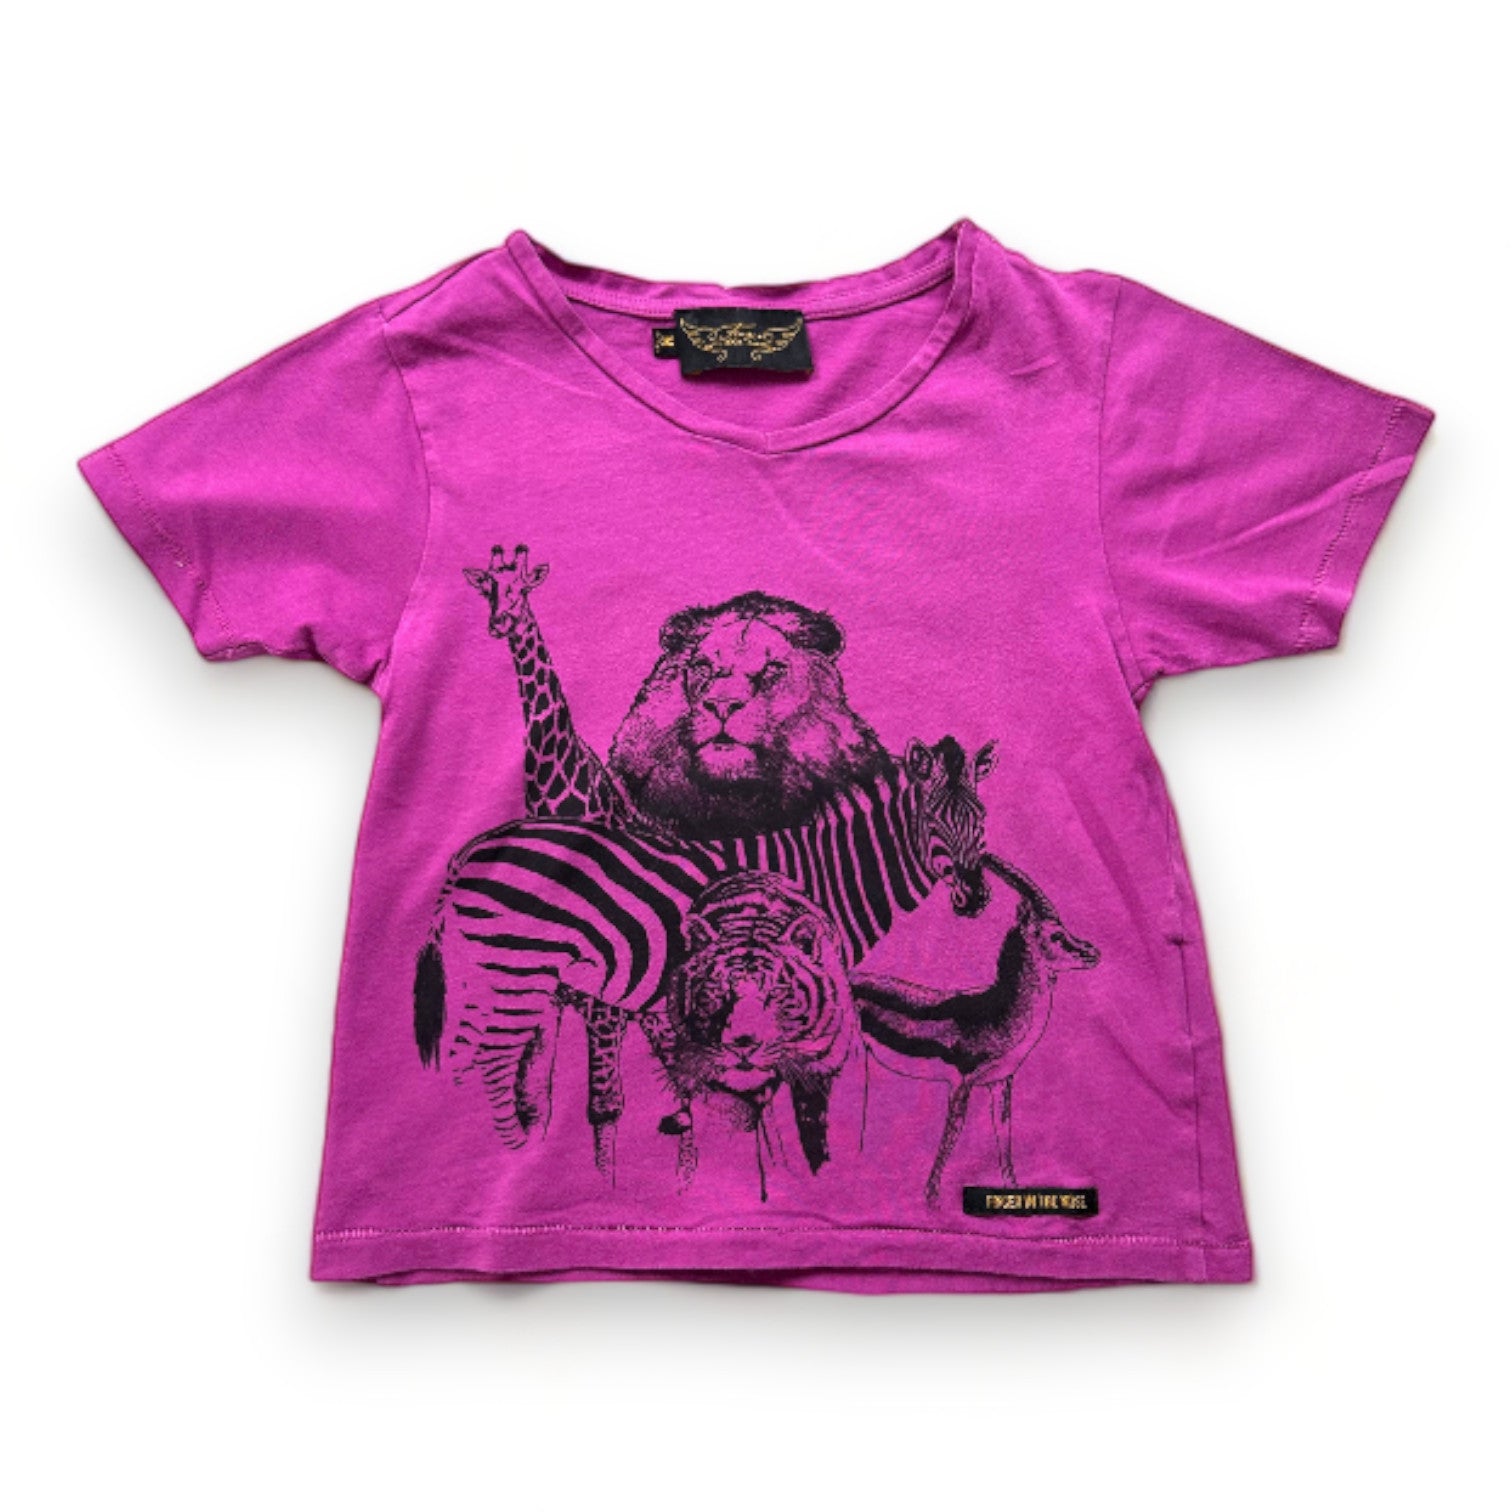 FINGER IN THE NOSE - T-shirt violet avec imprimés animaux - 4 ans